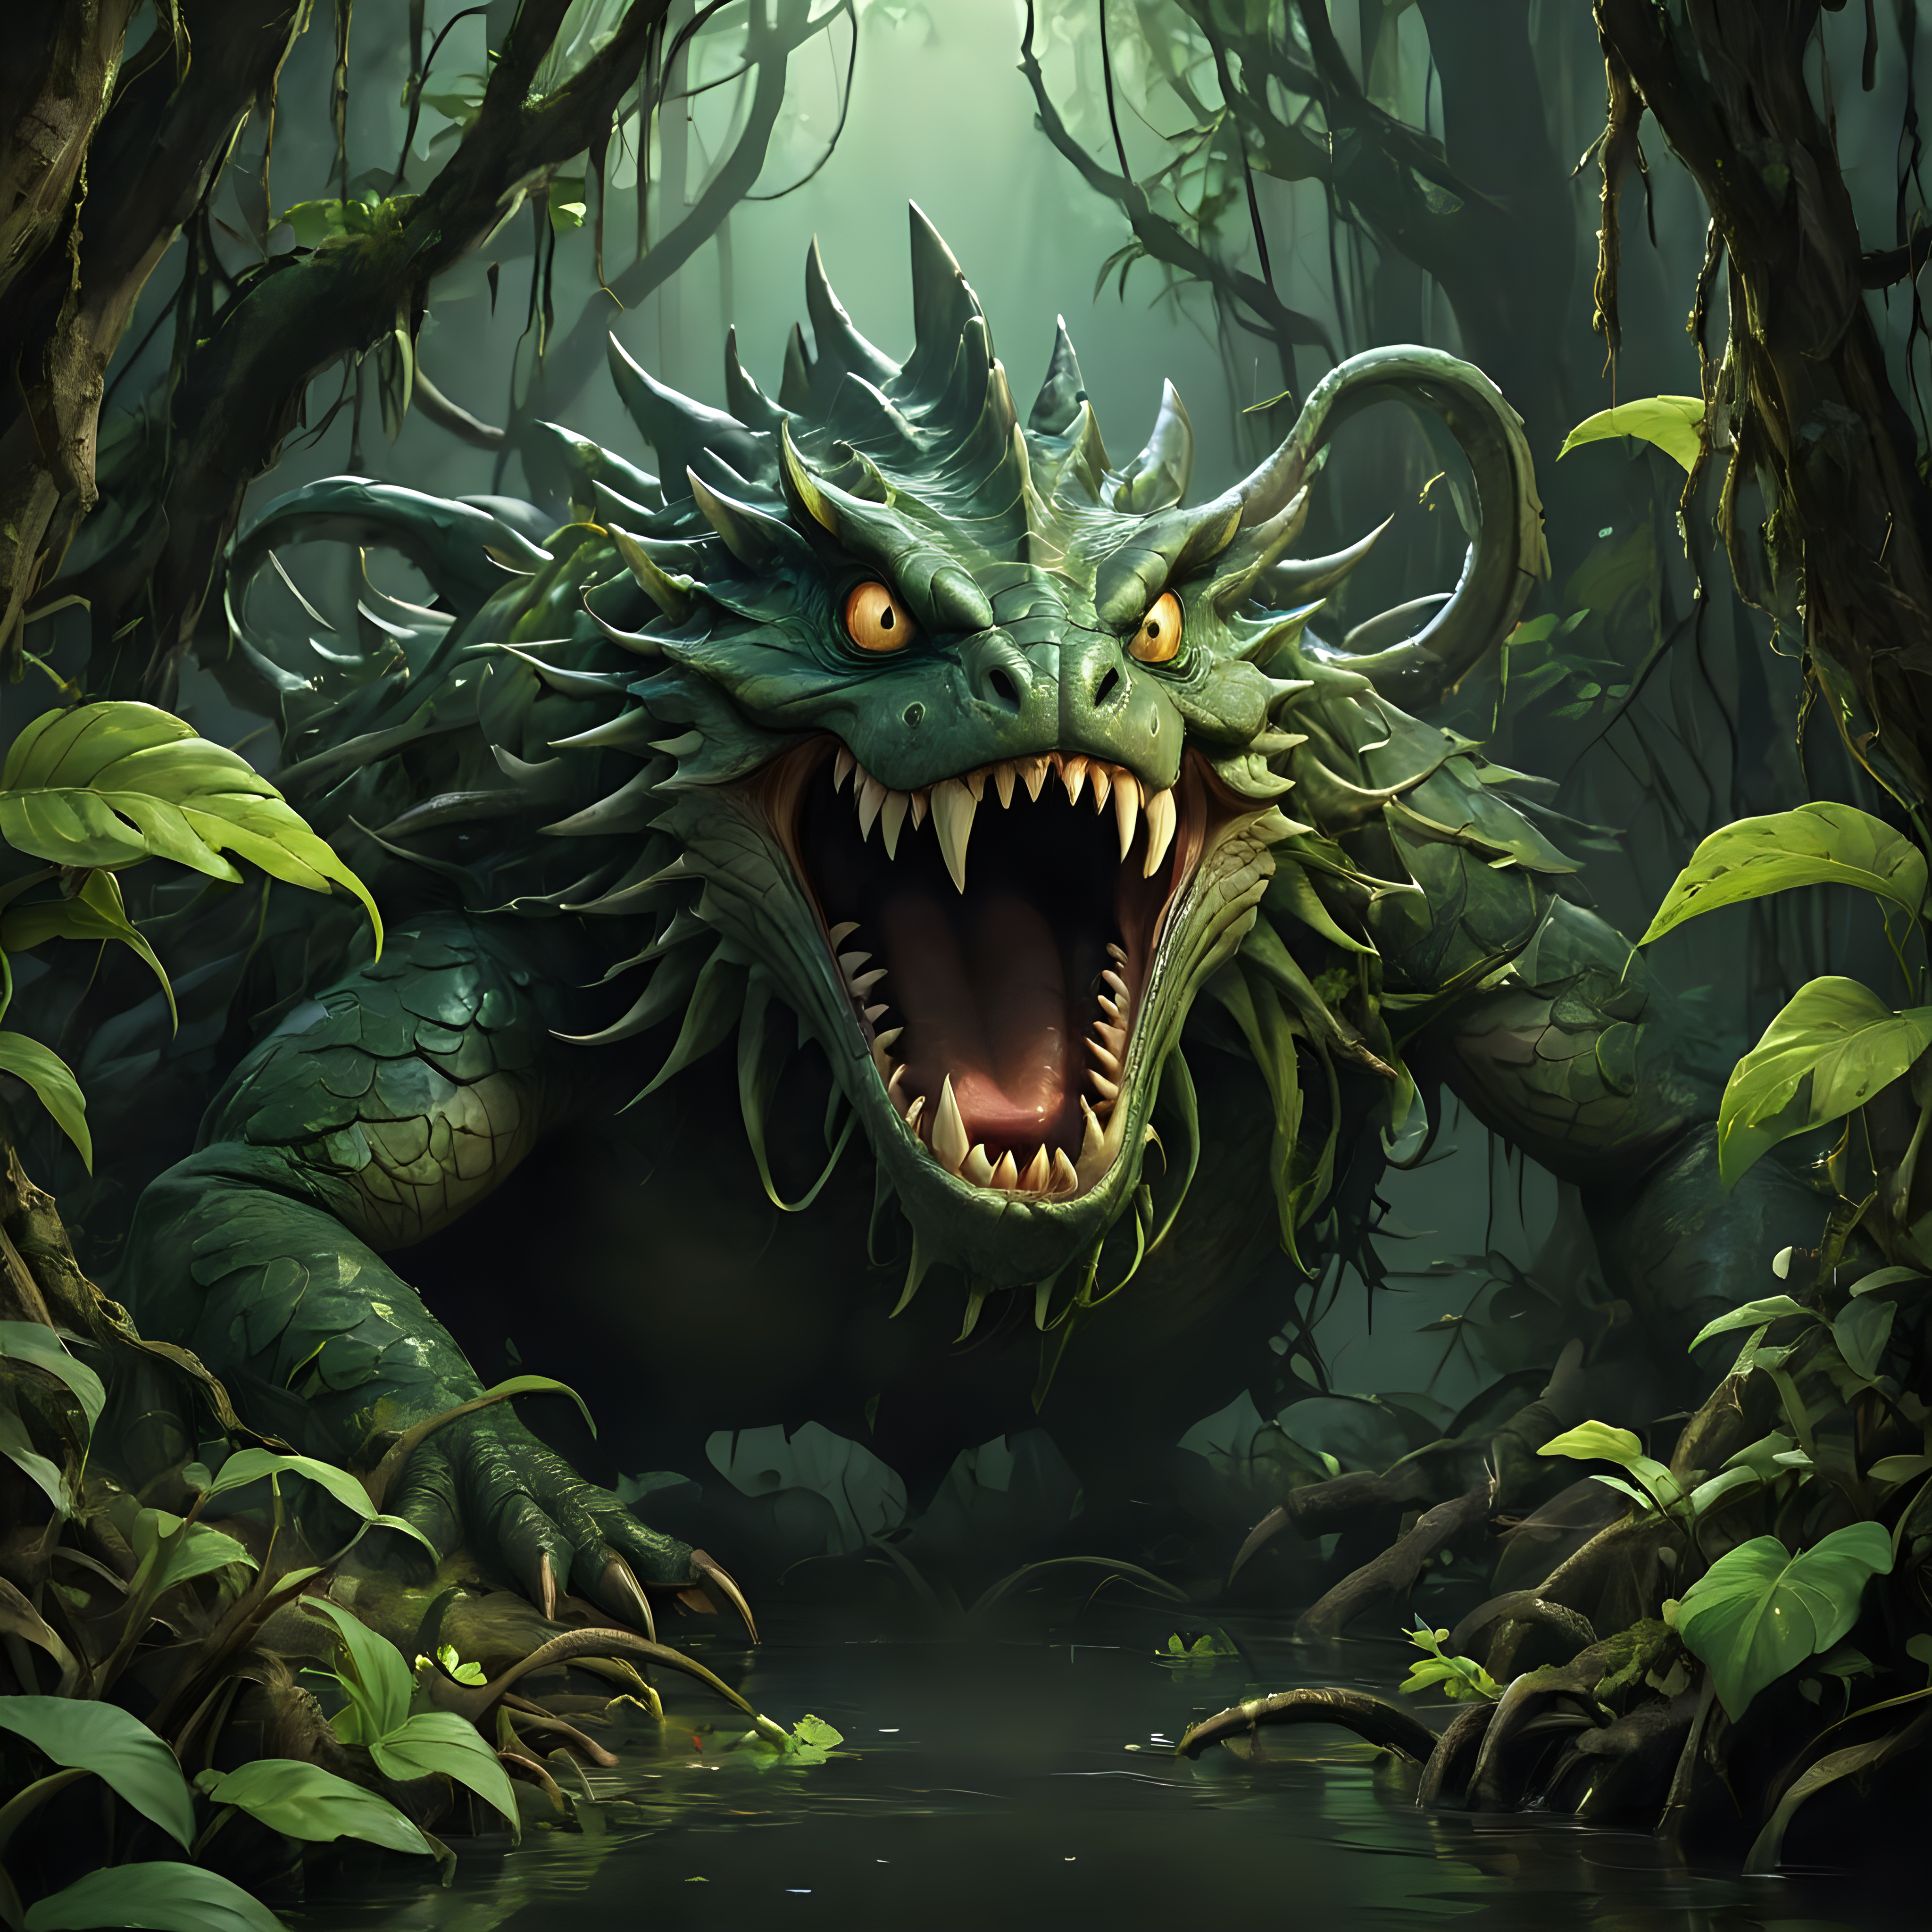 Voradon Sylvestre Stealthy Swamp Predator Emerges from Darkness